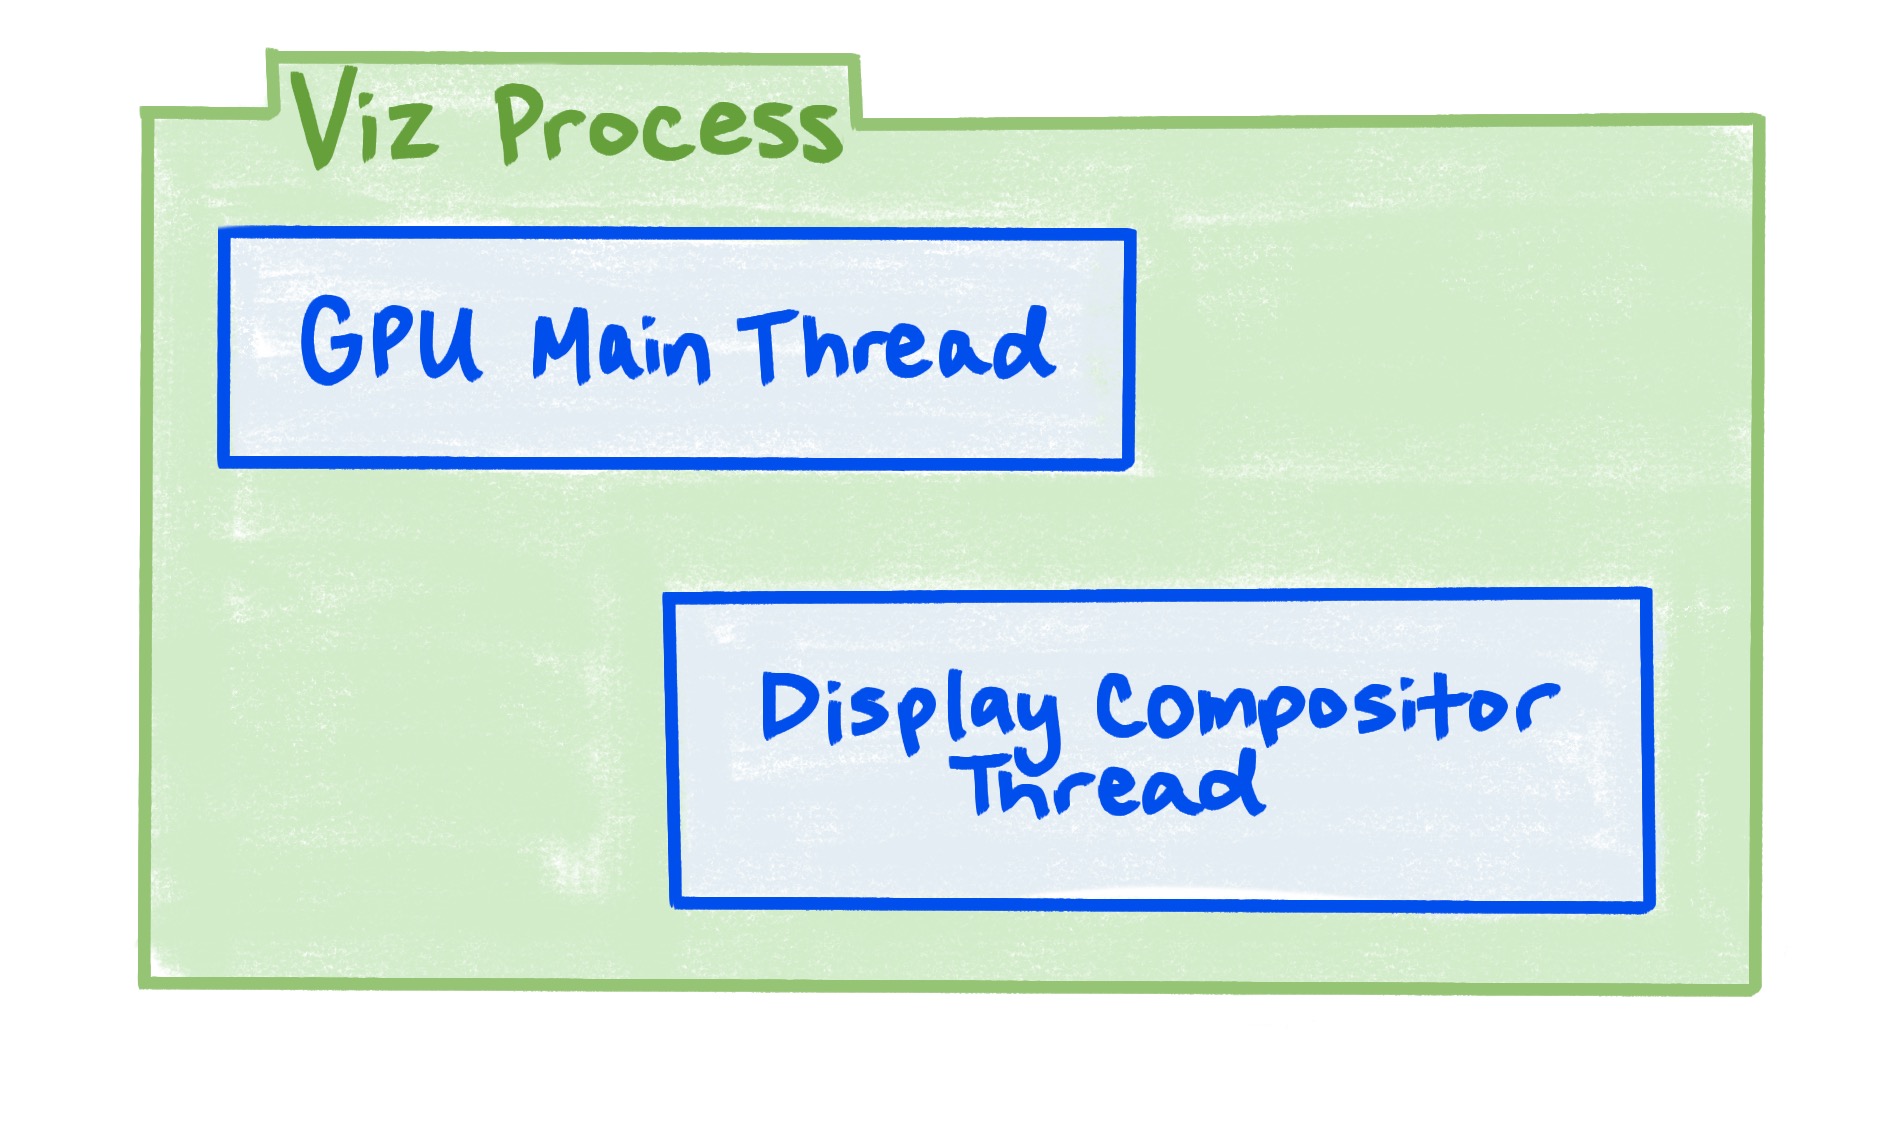 Der Viz-Prozess umfasst den GPU-Hauptthread und den zusammengesetzten Anzeigethread.